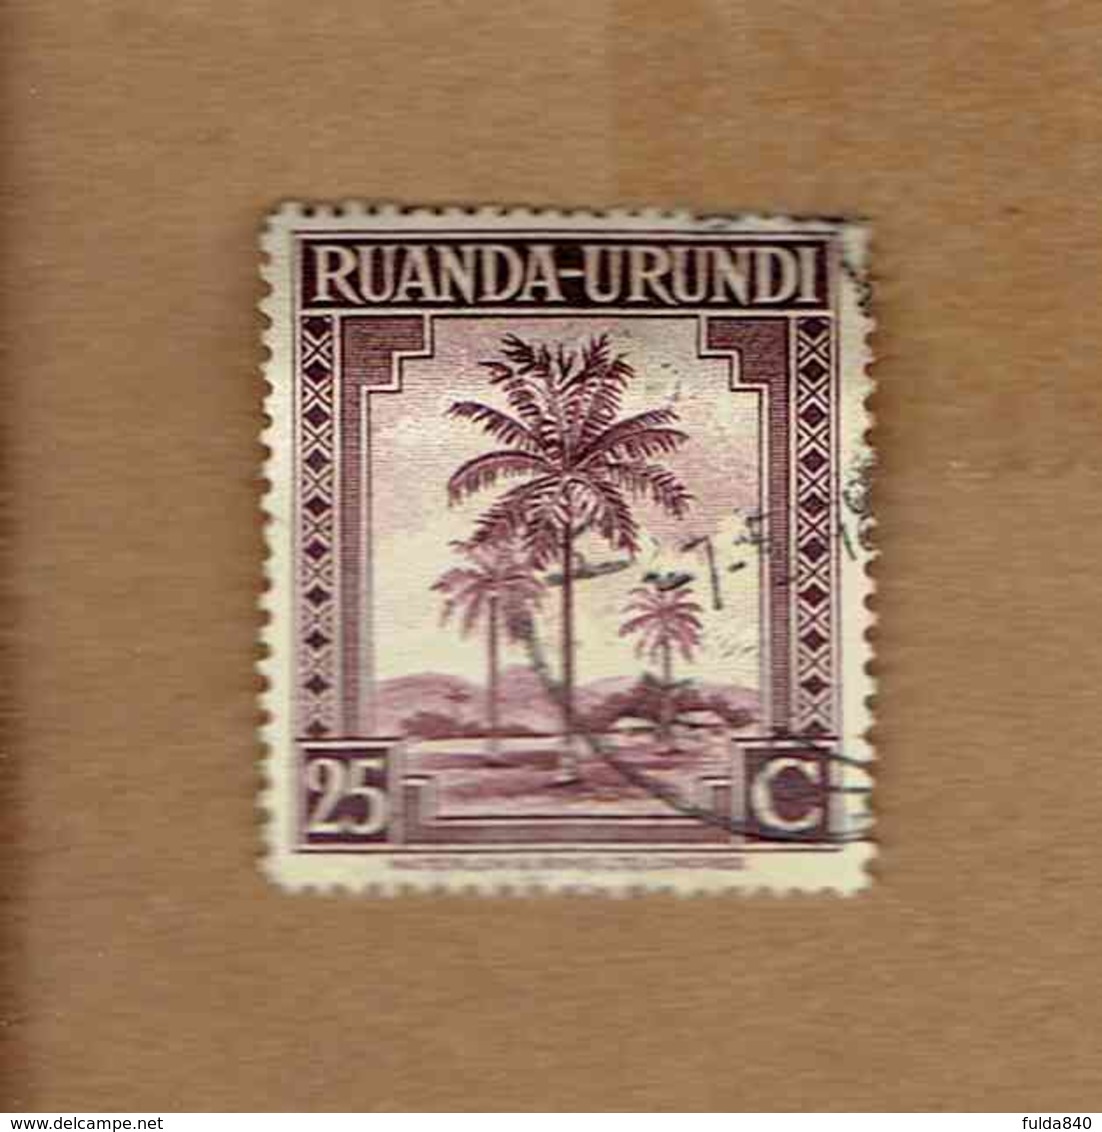 Ruanda-Urundi.(COB-OBP)  1942 - N°130  *PALMIERS, SUJETS DIVERS*    20c  Oblitéré - Oblitérés